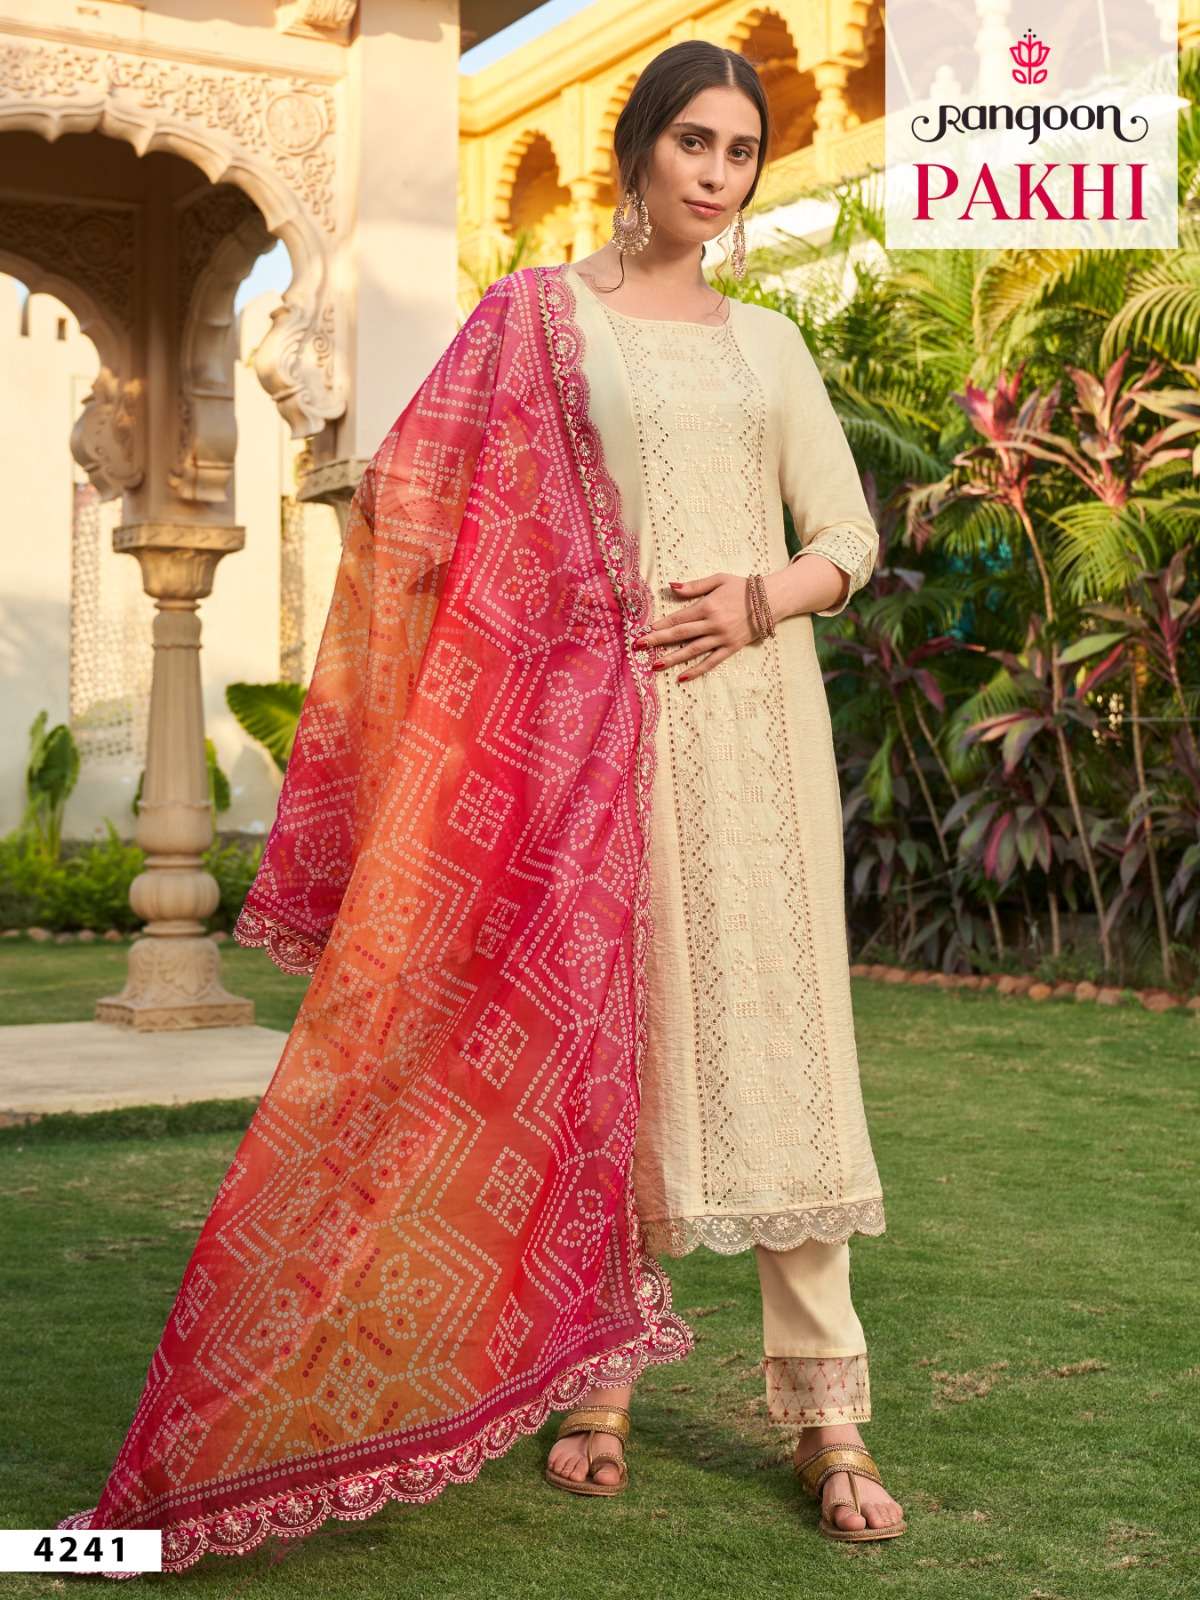 rangoon pakhi 4251-4254 series exclusive designer kurtis catalogue manufacturer surat 